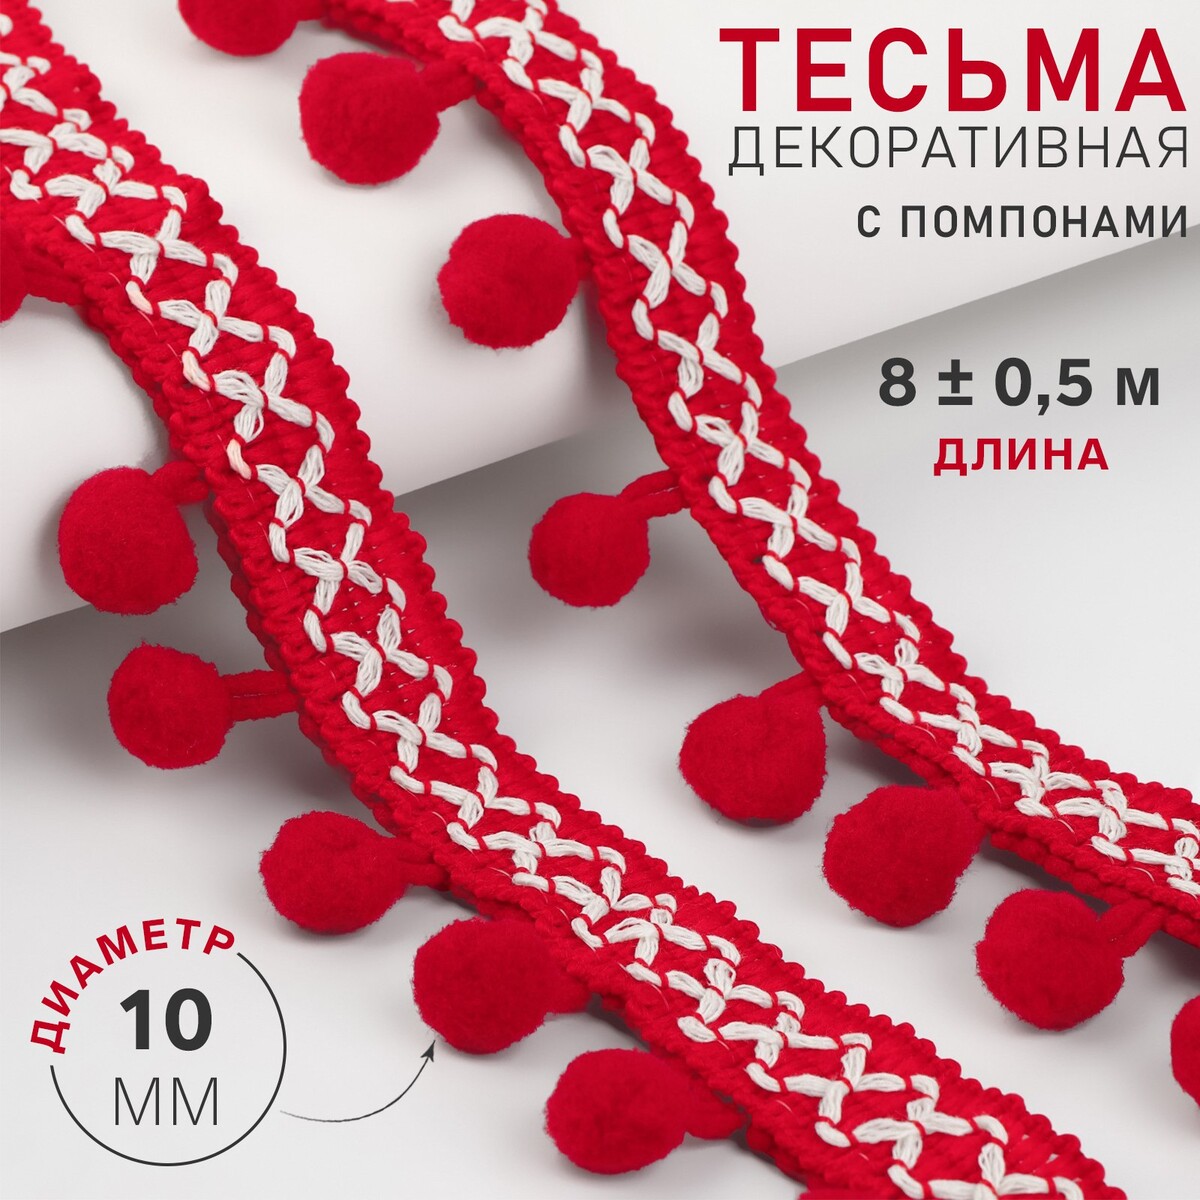 Тесьма декоративная с помпонами, 15 мм, 8 ± 0,5 м, цвет красный тесьма декоративная с помпонами 15 мм 8 ± 0 5 м красный